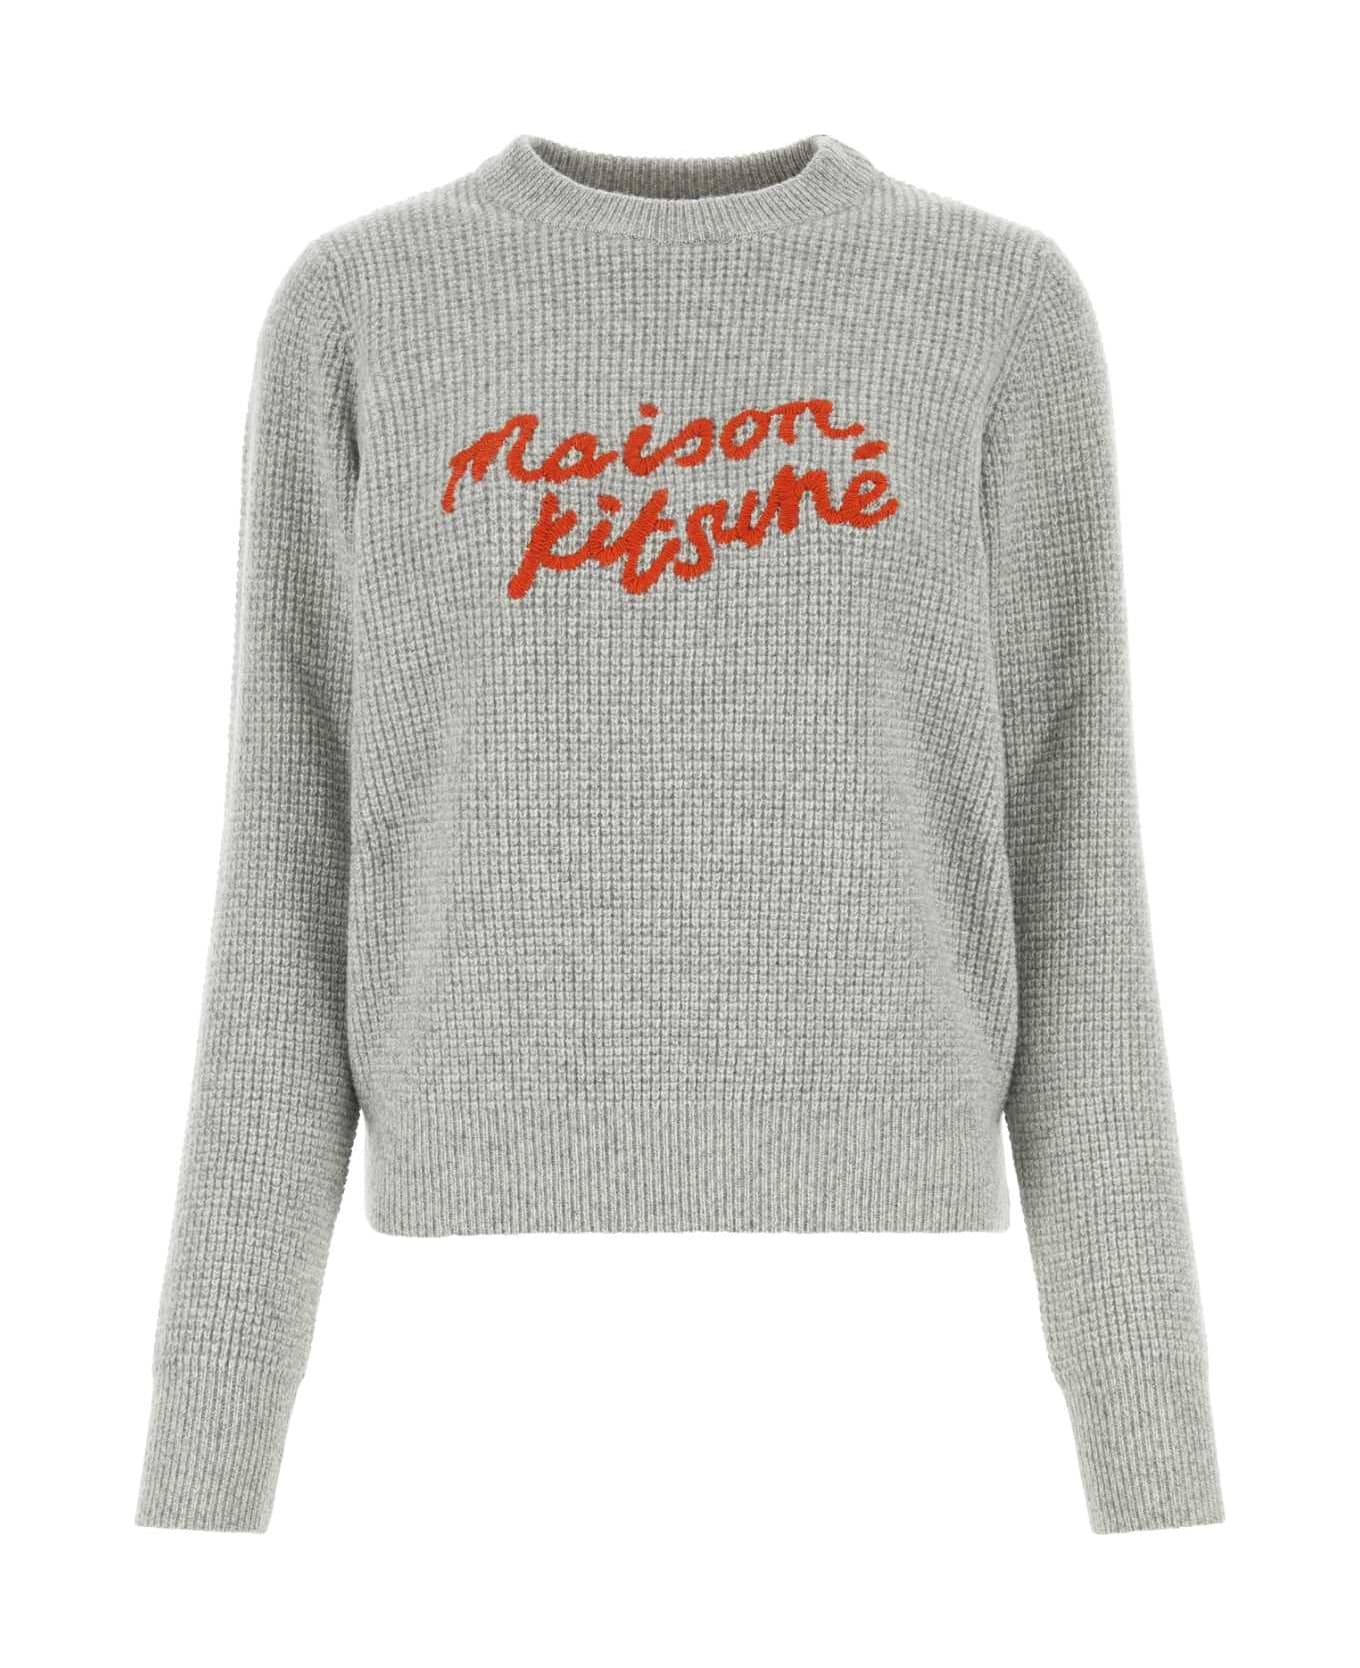 Maison Kitsuné Light Grey Wool Sweater - LIGHT GREY MELANGE フリース